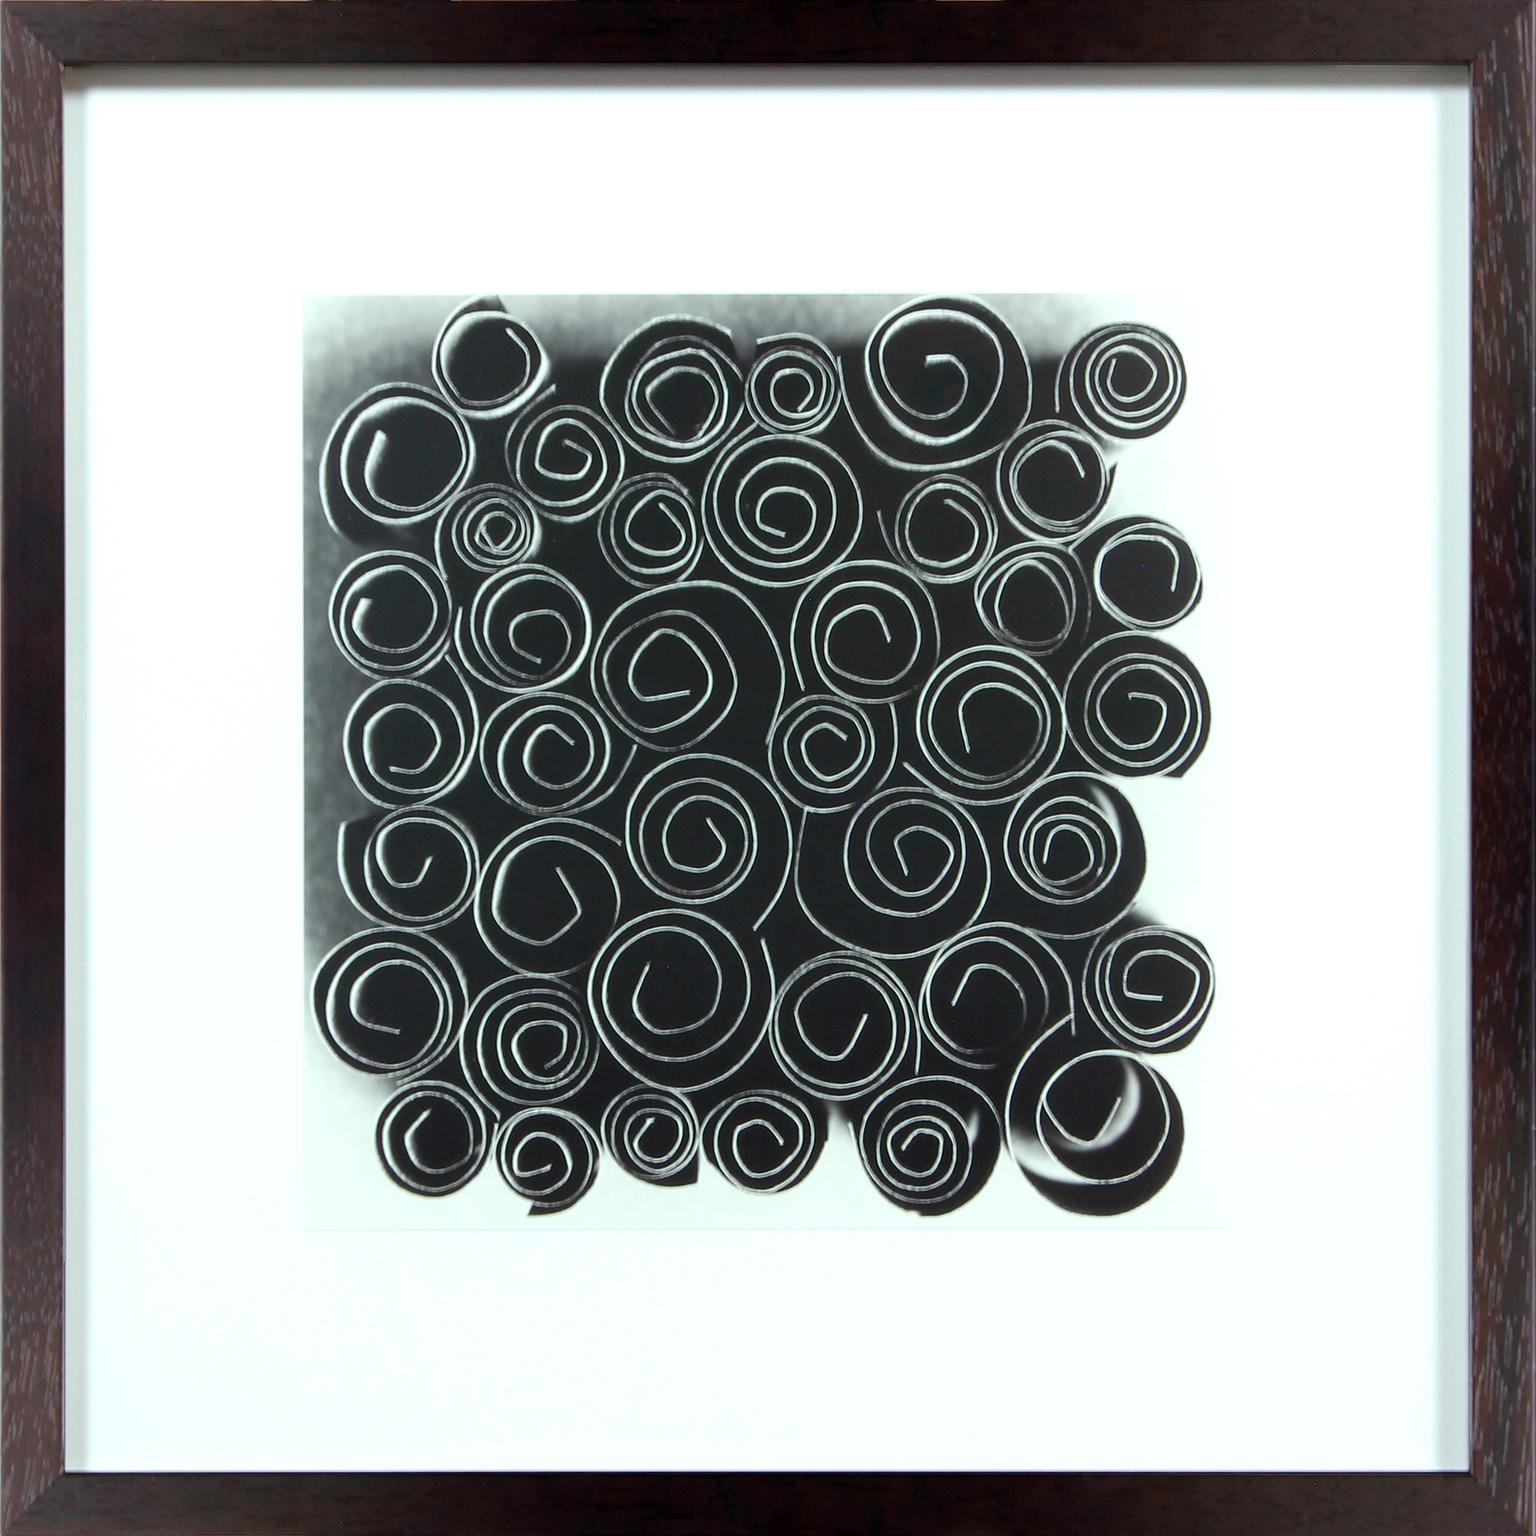 Schwarz-Weiß-Foto. Silbergelatineabzug von Ion Zupcu. Ausgabe 4 von 15. Auf der Rückseite betitelt, nummeriert und signiert. Gerahmt unter Glas in schwarzem Holzrahmen. Gerahmte Abmessungen 23 3/4 x 23 3/4 Zoll. Bildgröße: 15 x 15 Zoll. 